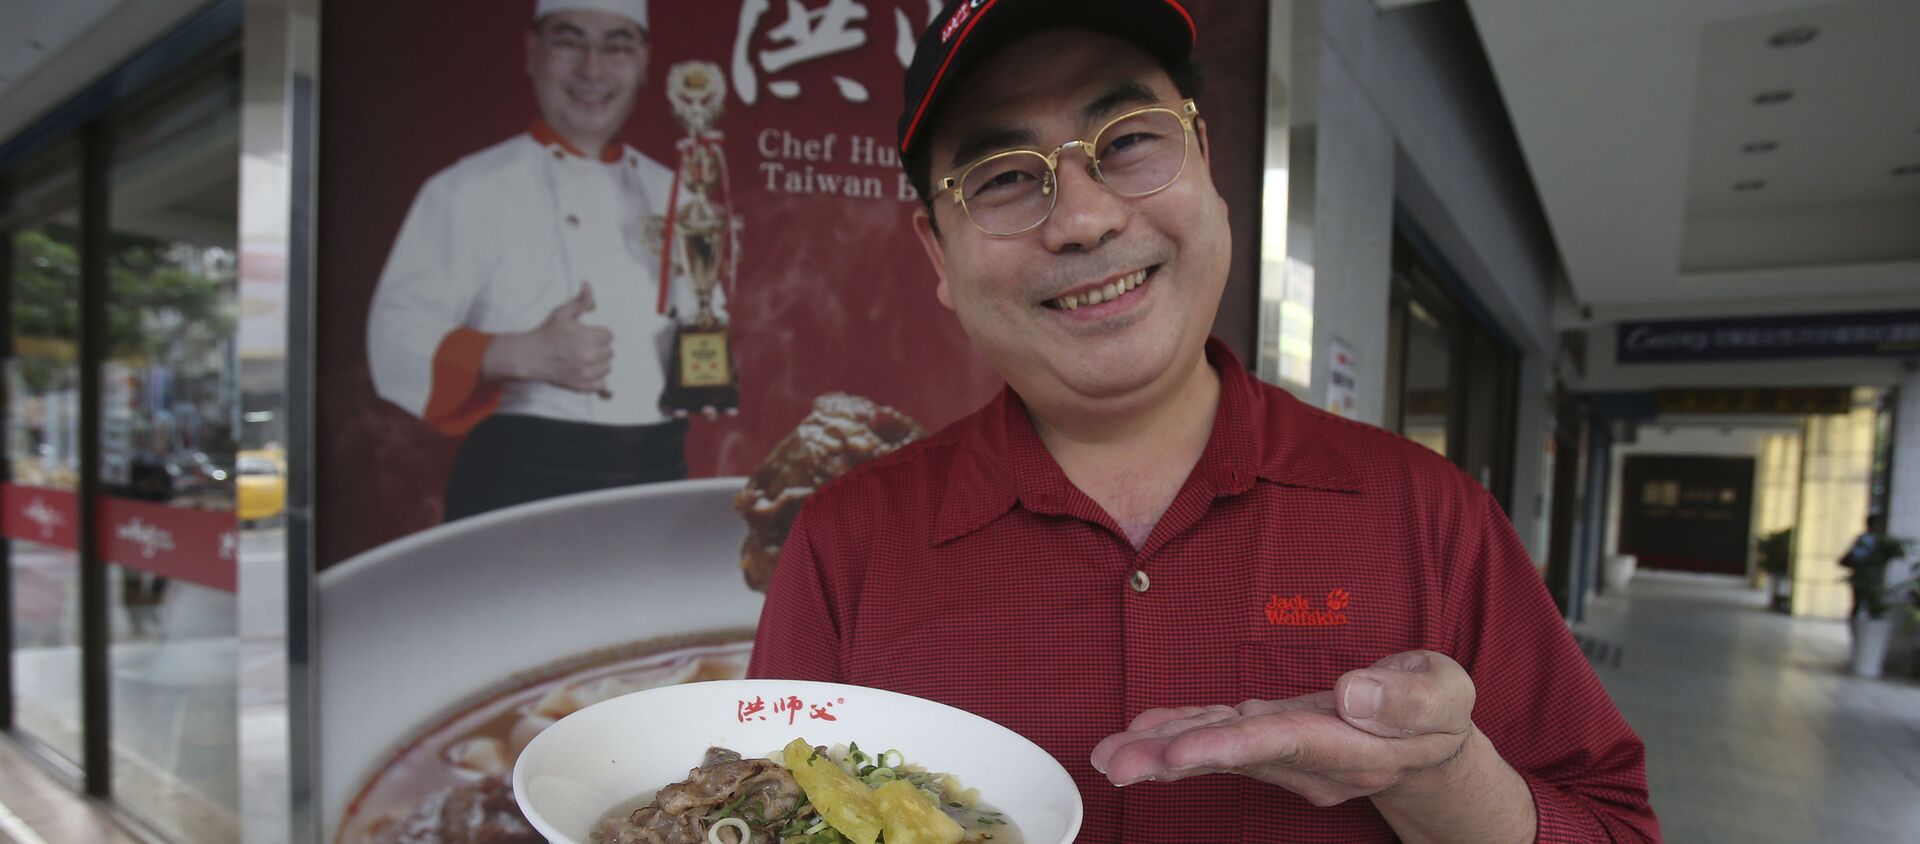 Chef Hung với đĩa mì bò lá dứa bên ngoài nhà hàng của anh ấy ở Đài Bắc, Đài Loan - Sputnik Việt Nam, 1920, 14.03.2021